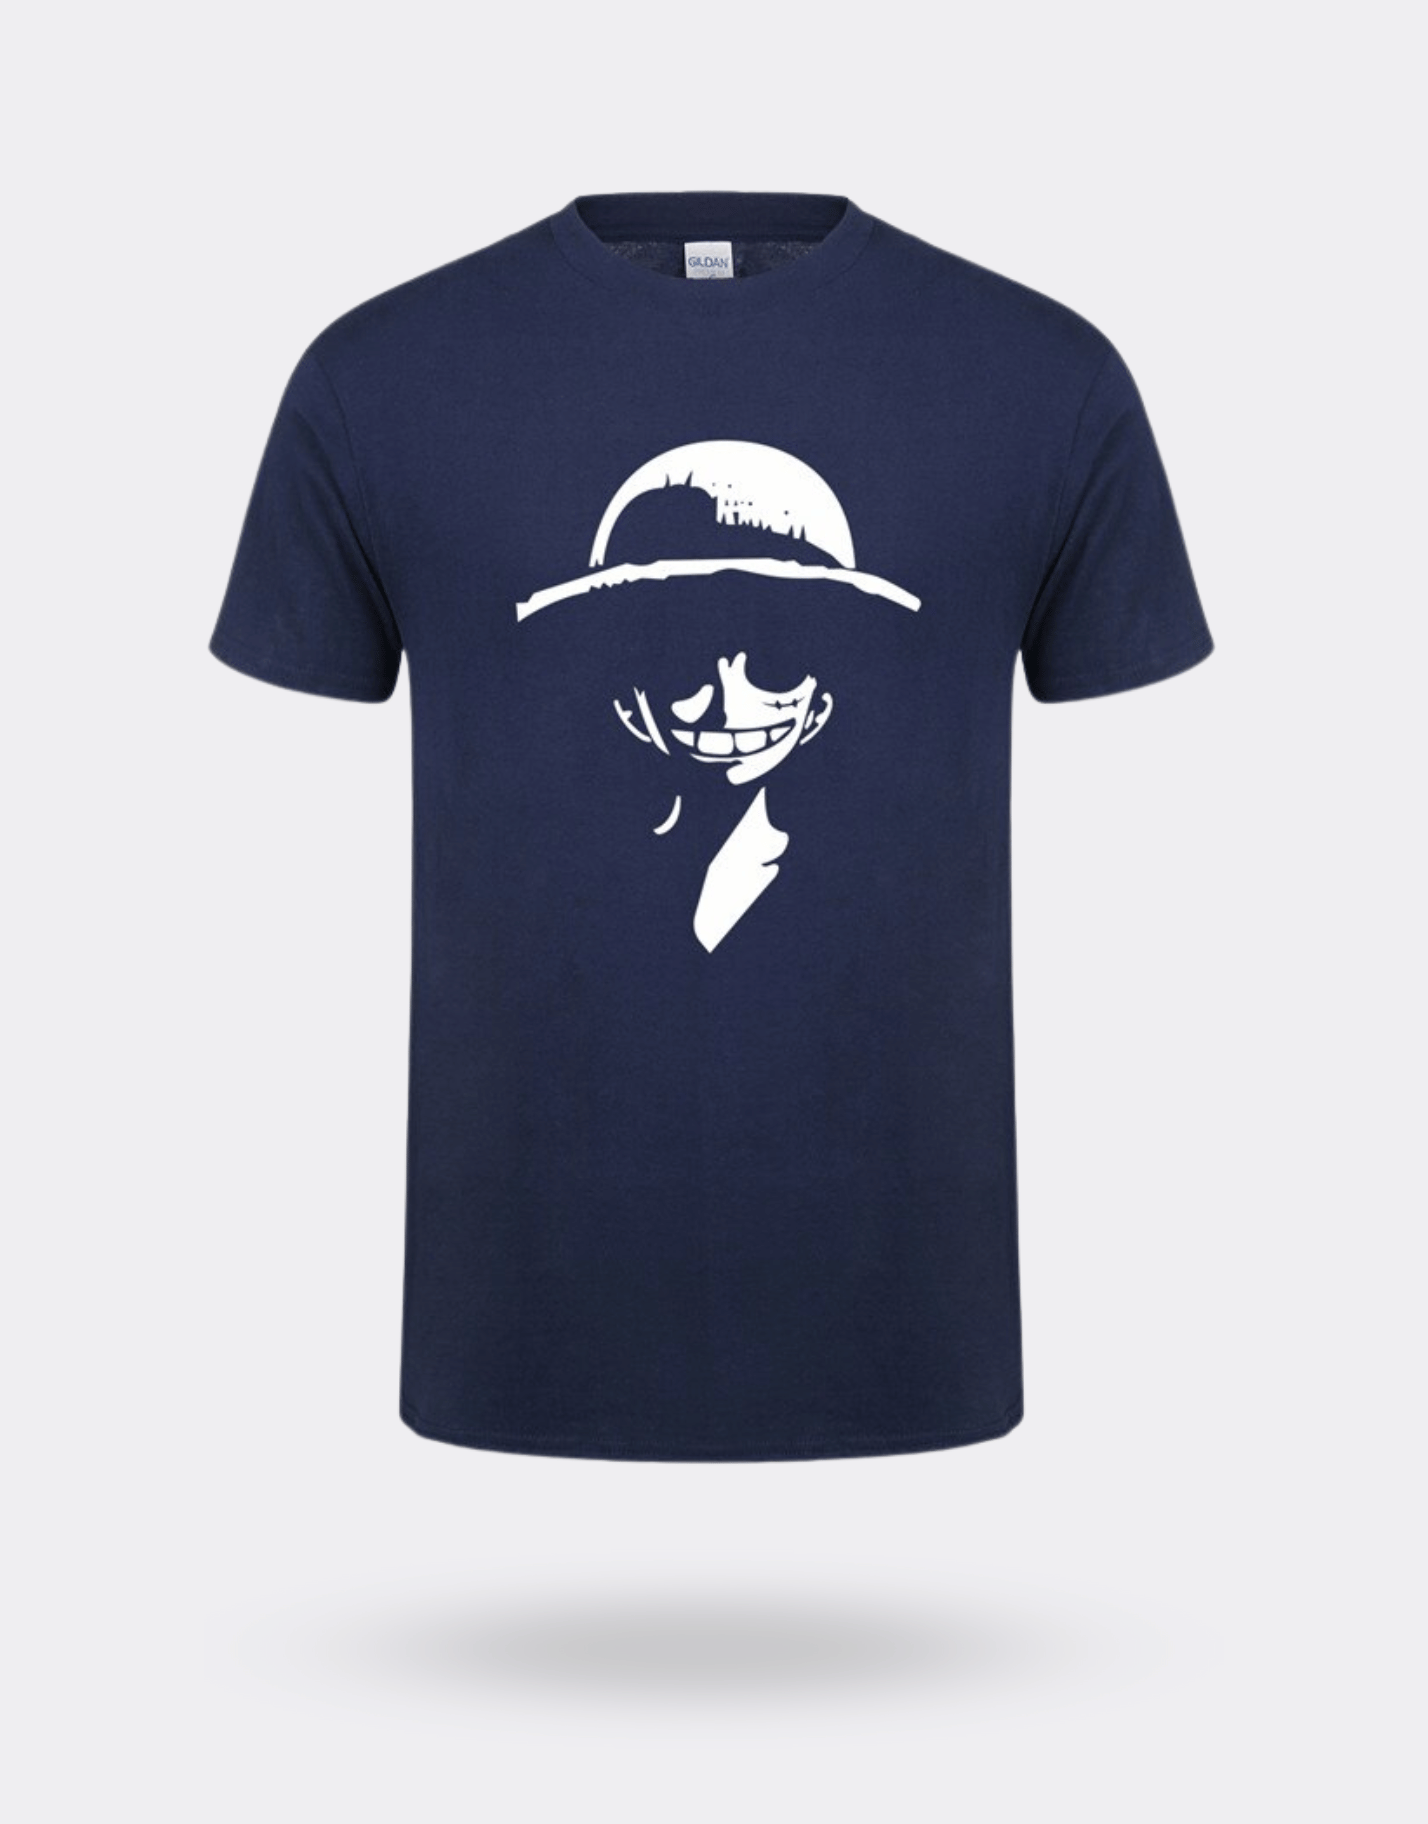 T-shirt One Piece luffy blanc et bleu